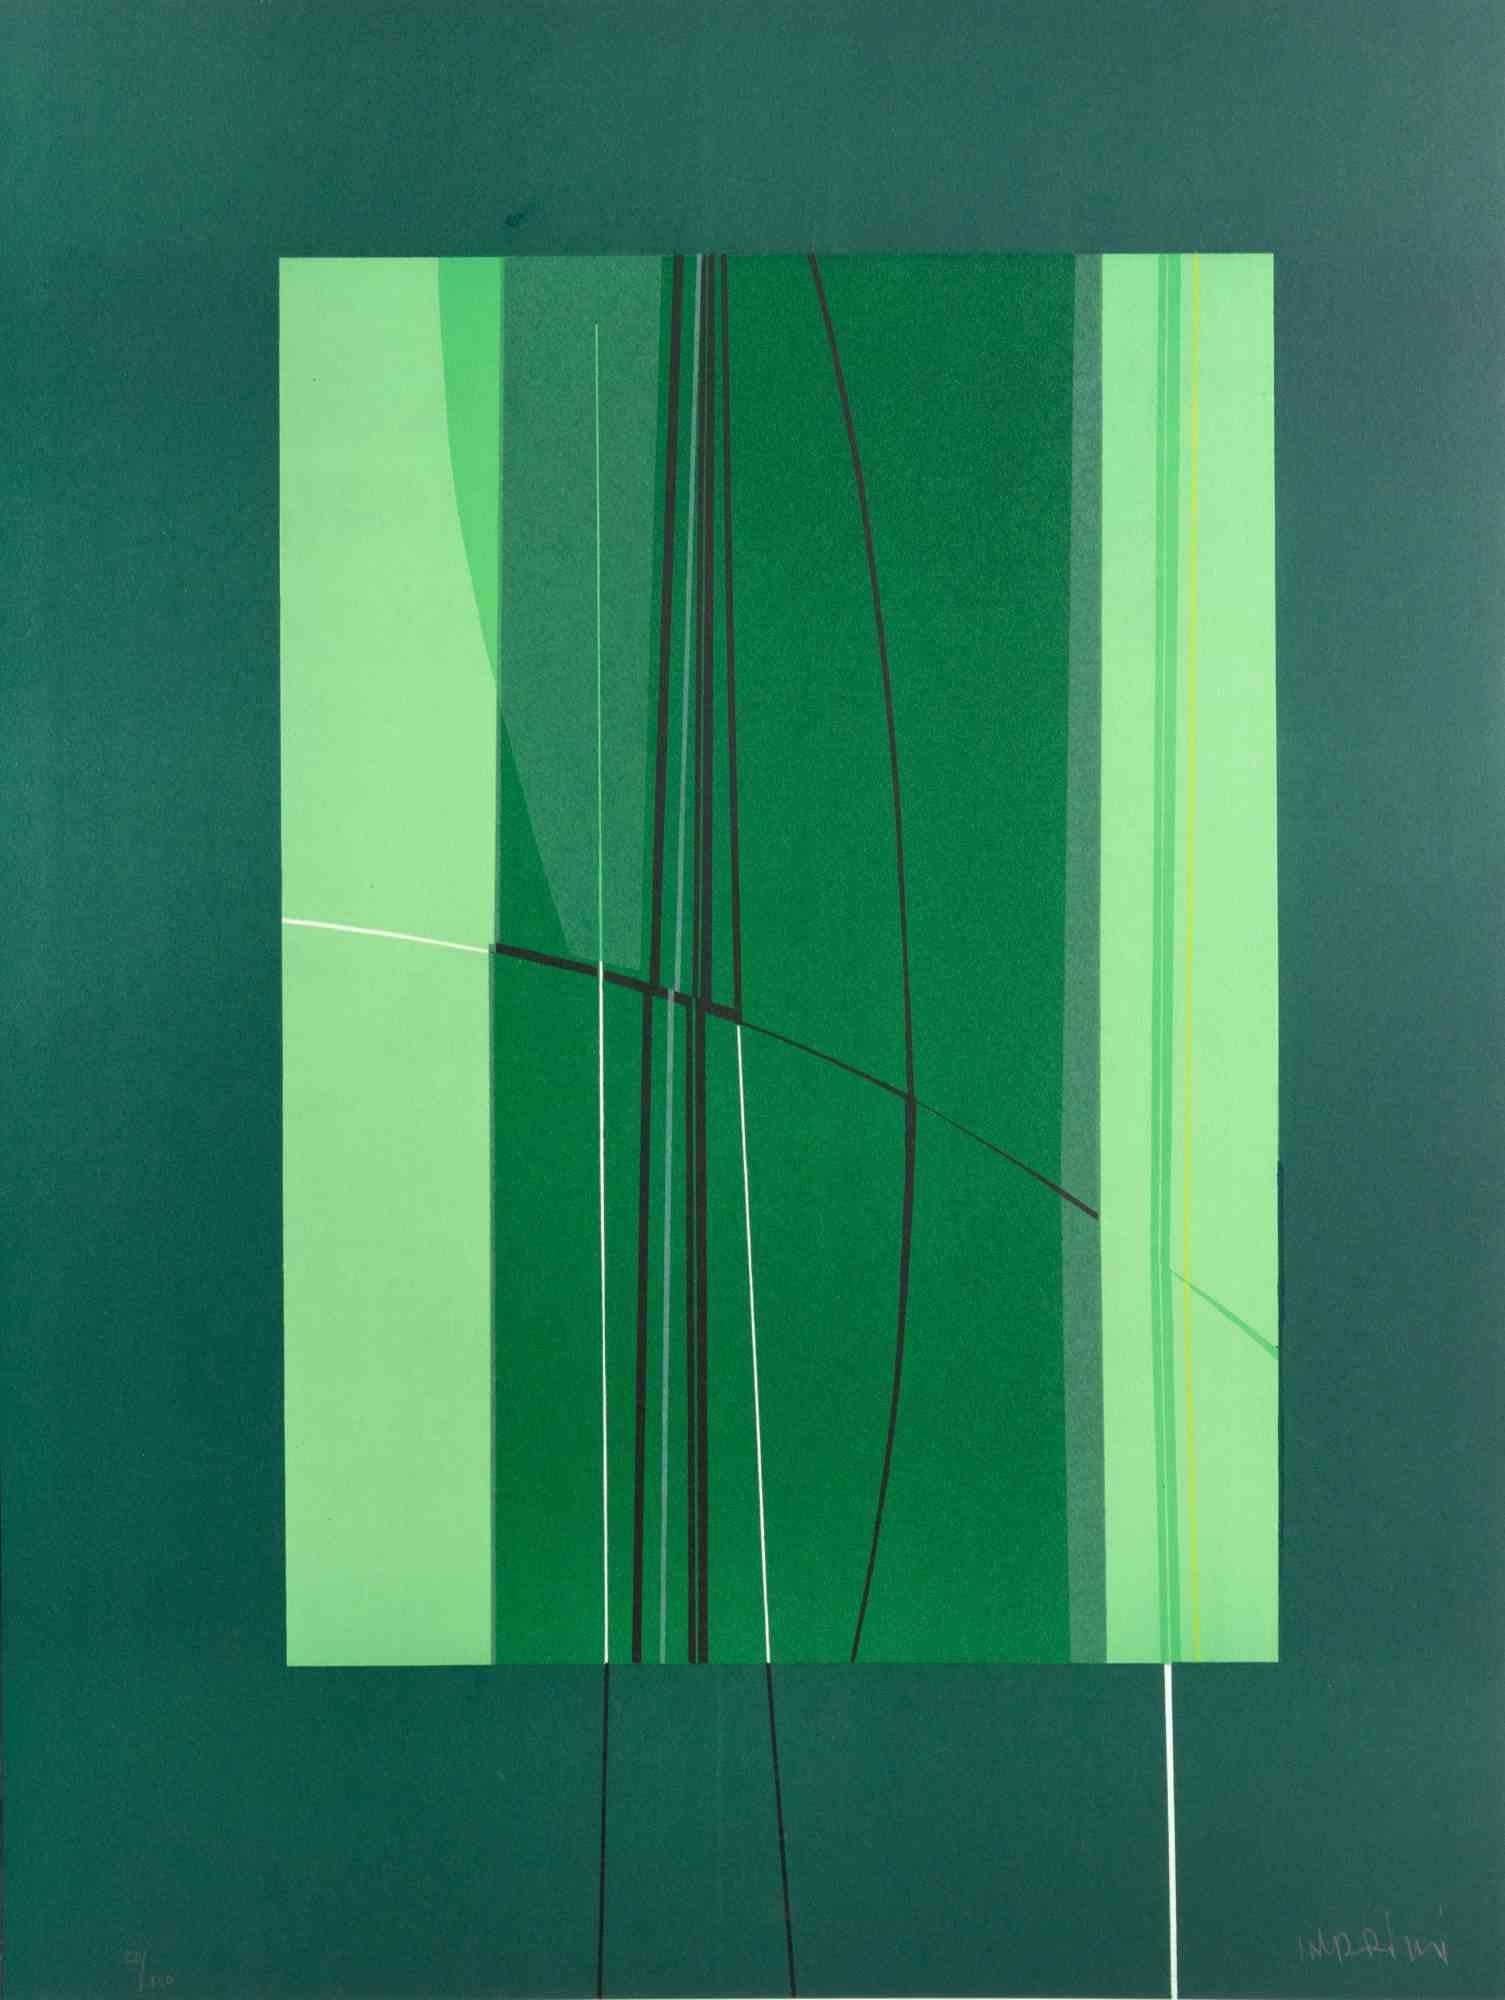 Green est une �œuvre d'art contemporain réalisée par Lorenzo Indrimi dans les années 1970.

Lithographie en couleurs mélangées.

Signé à la main et daté dans la marge inférieure.

Édition de 92/150.